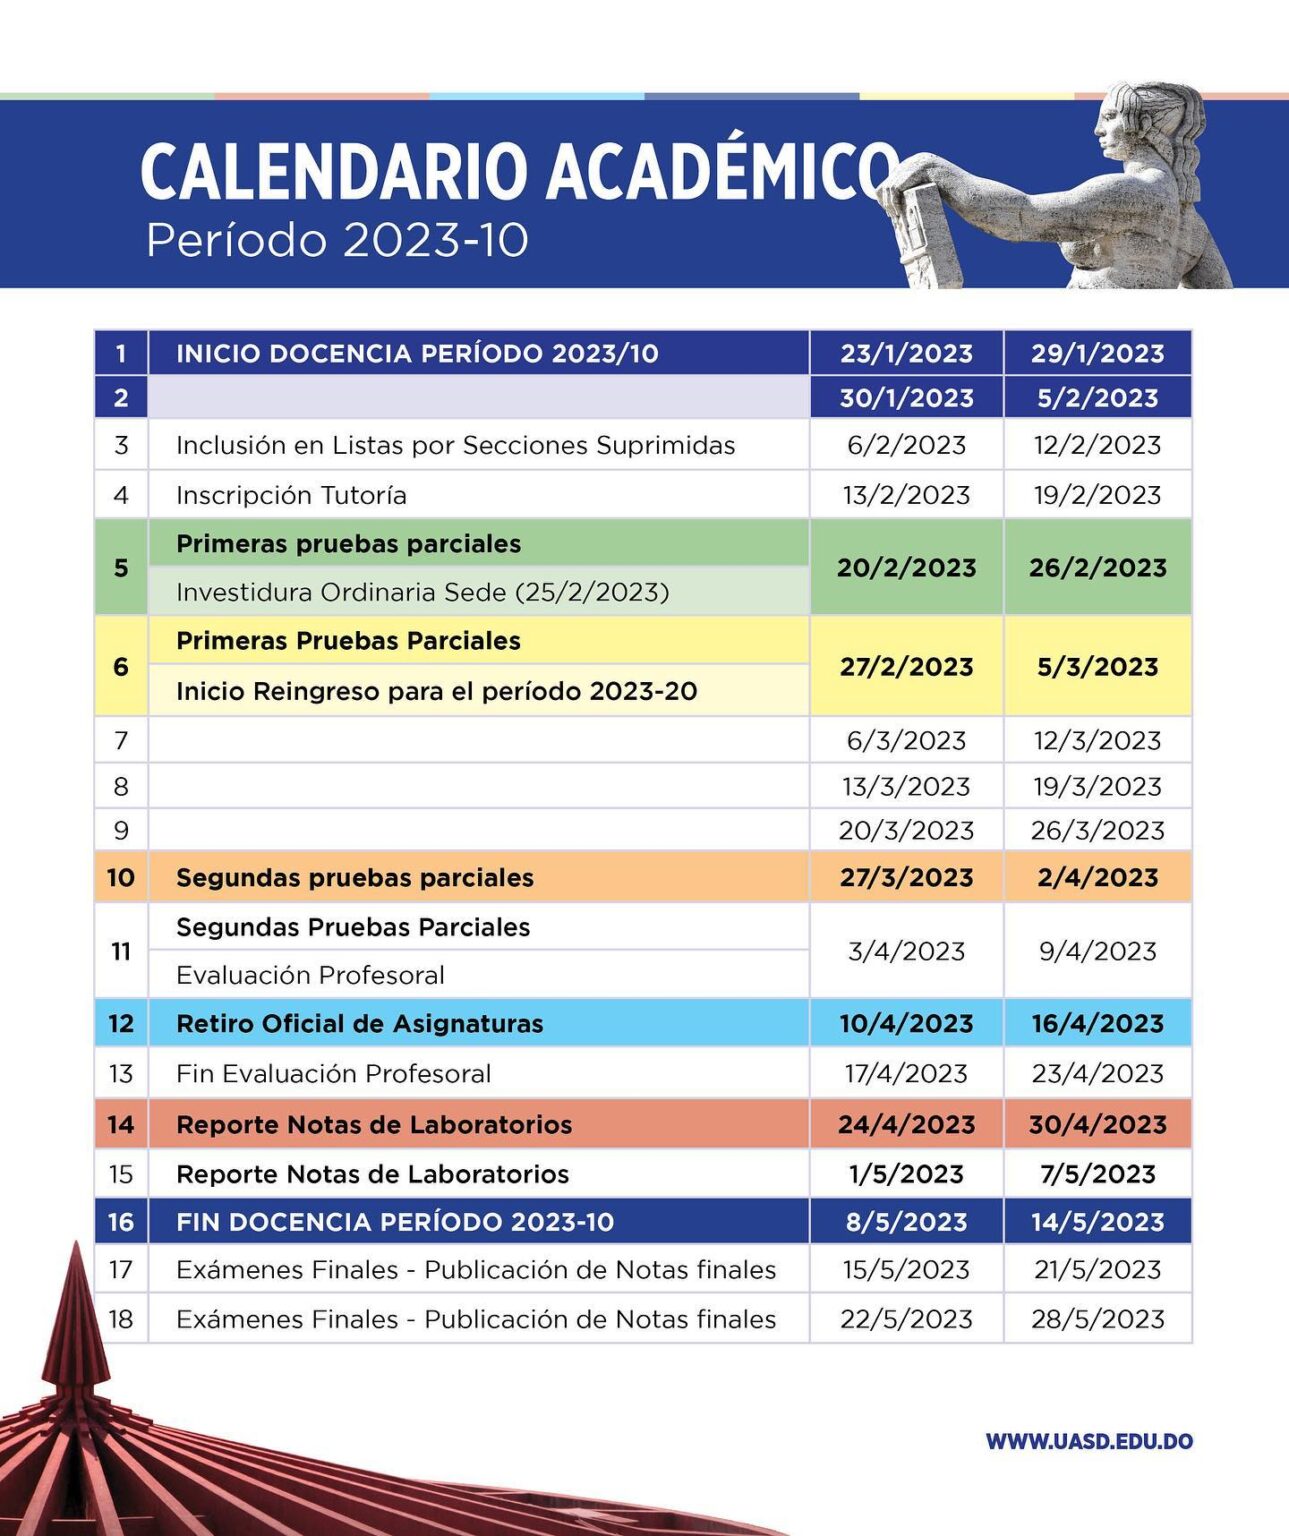 UASD Calendario Académico